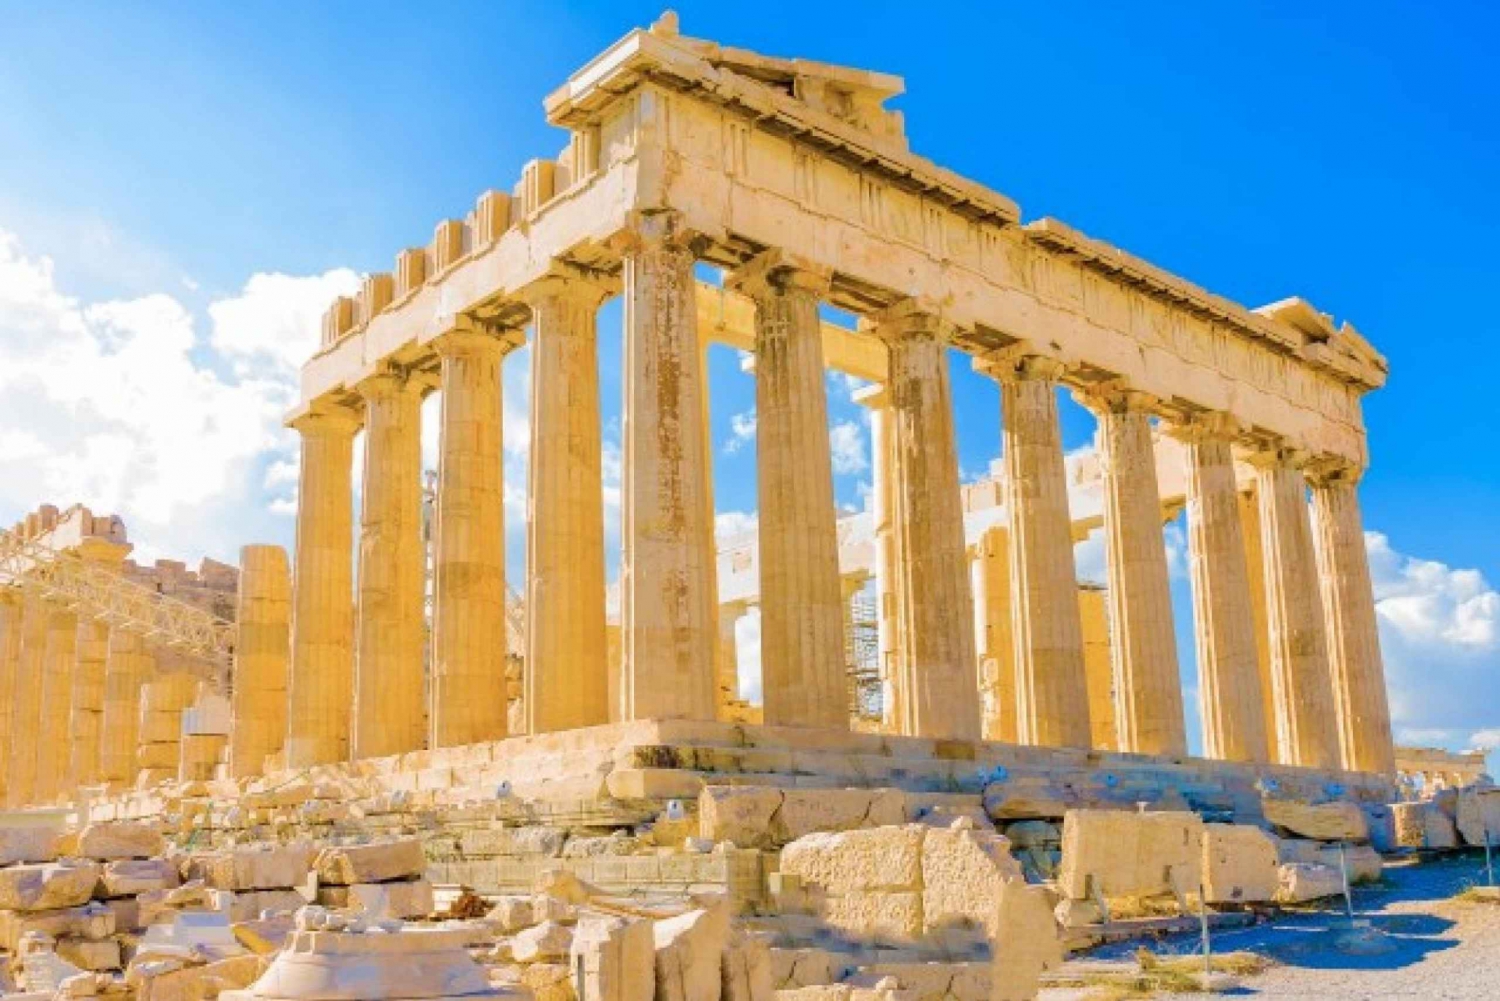 Aten: Akropolis Hill biljett med tidslucka